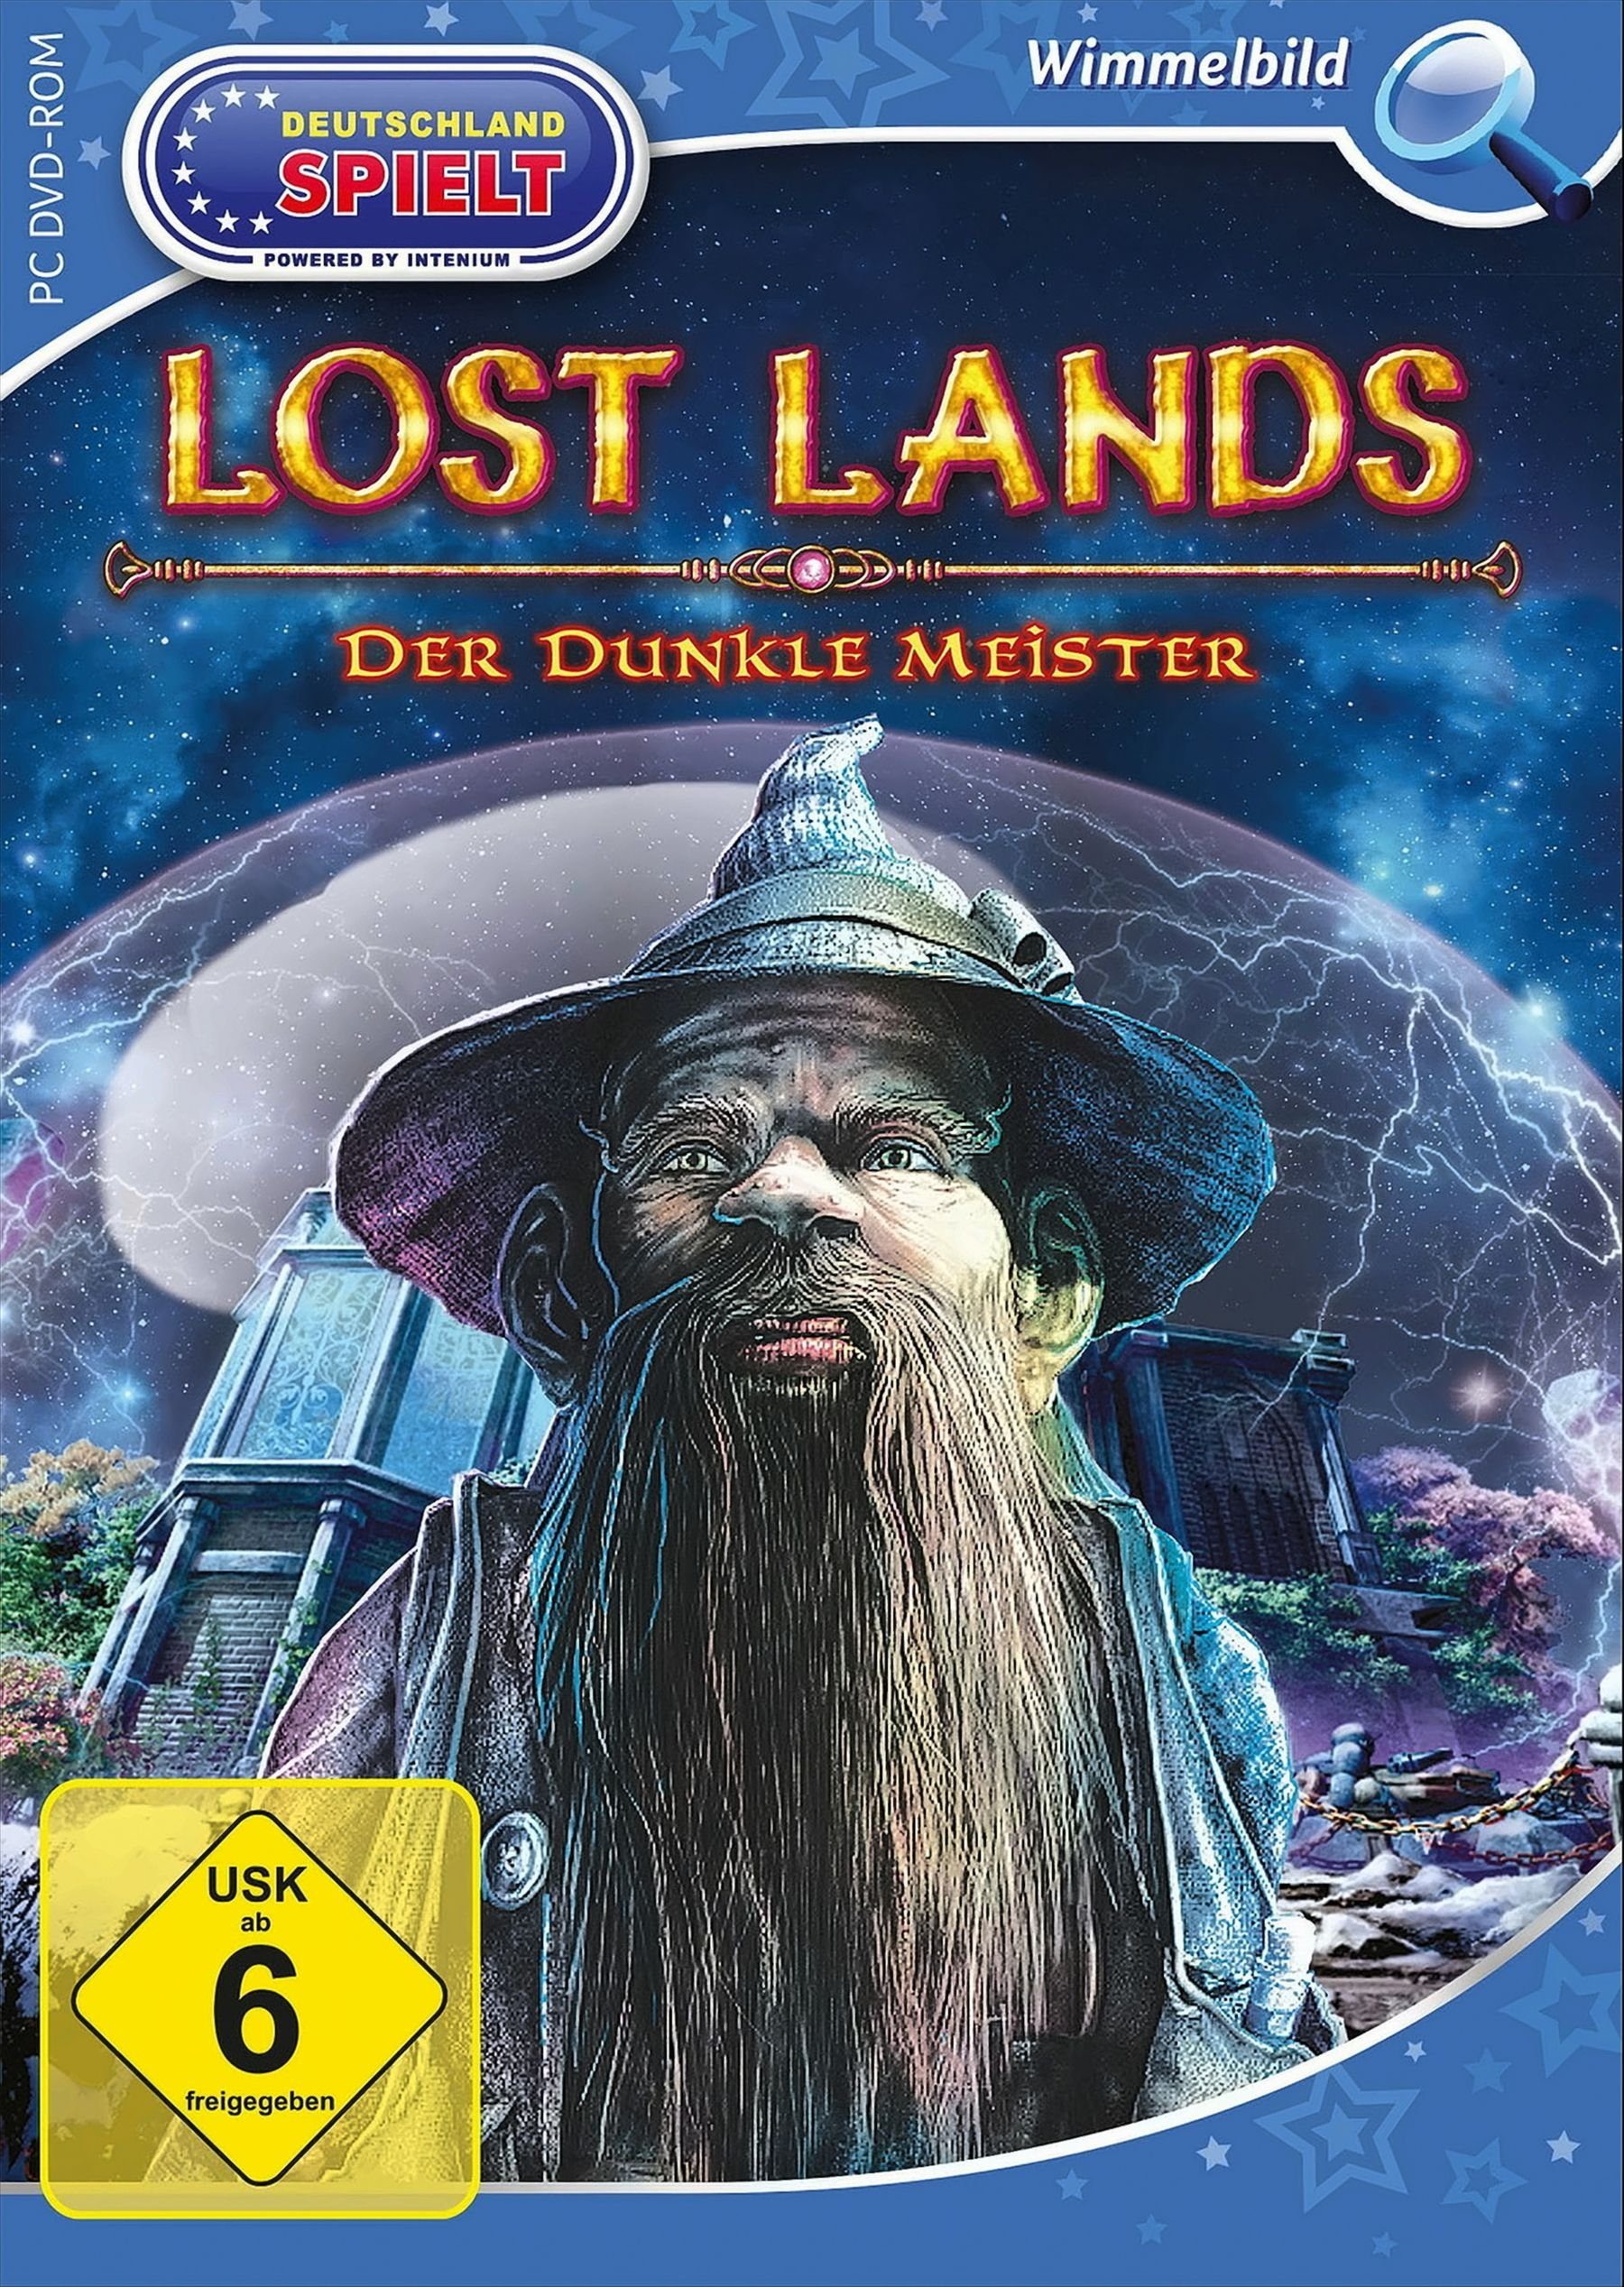 Lost Lands: Der dunkle Meister PC